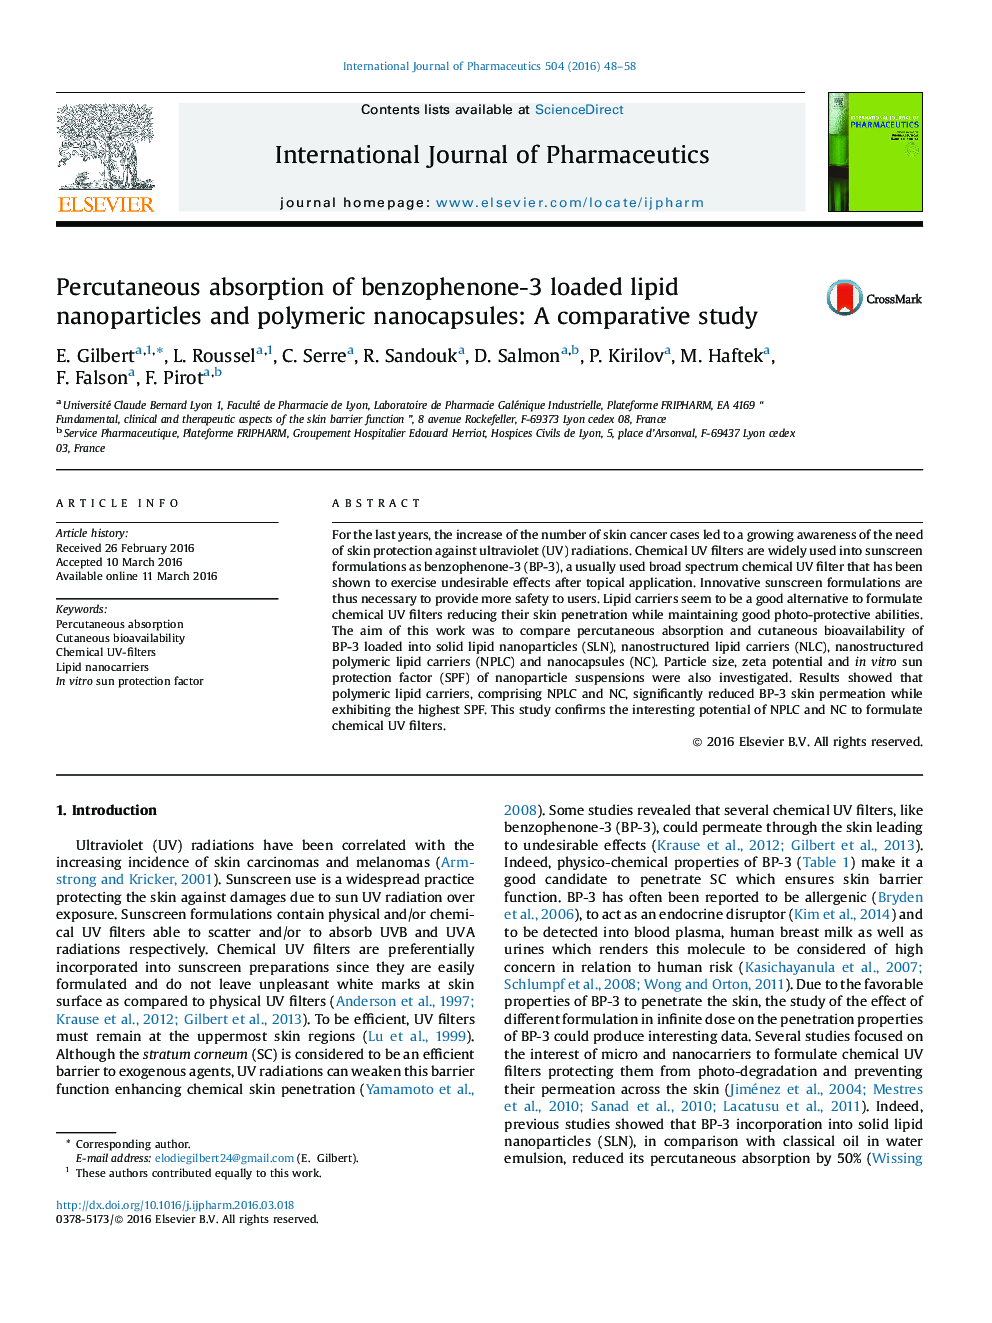 جذب پوستی از نانوذرات لیپید بارز بنزوفنون-3 و نانوکپسولهای پلیمری: یک مطالعه مقایسه ای 